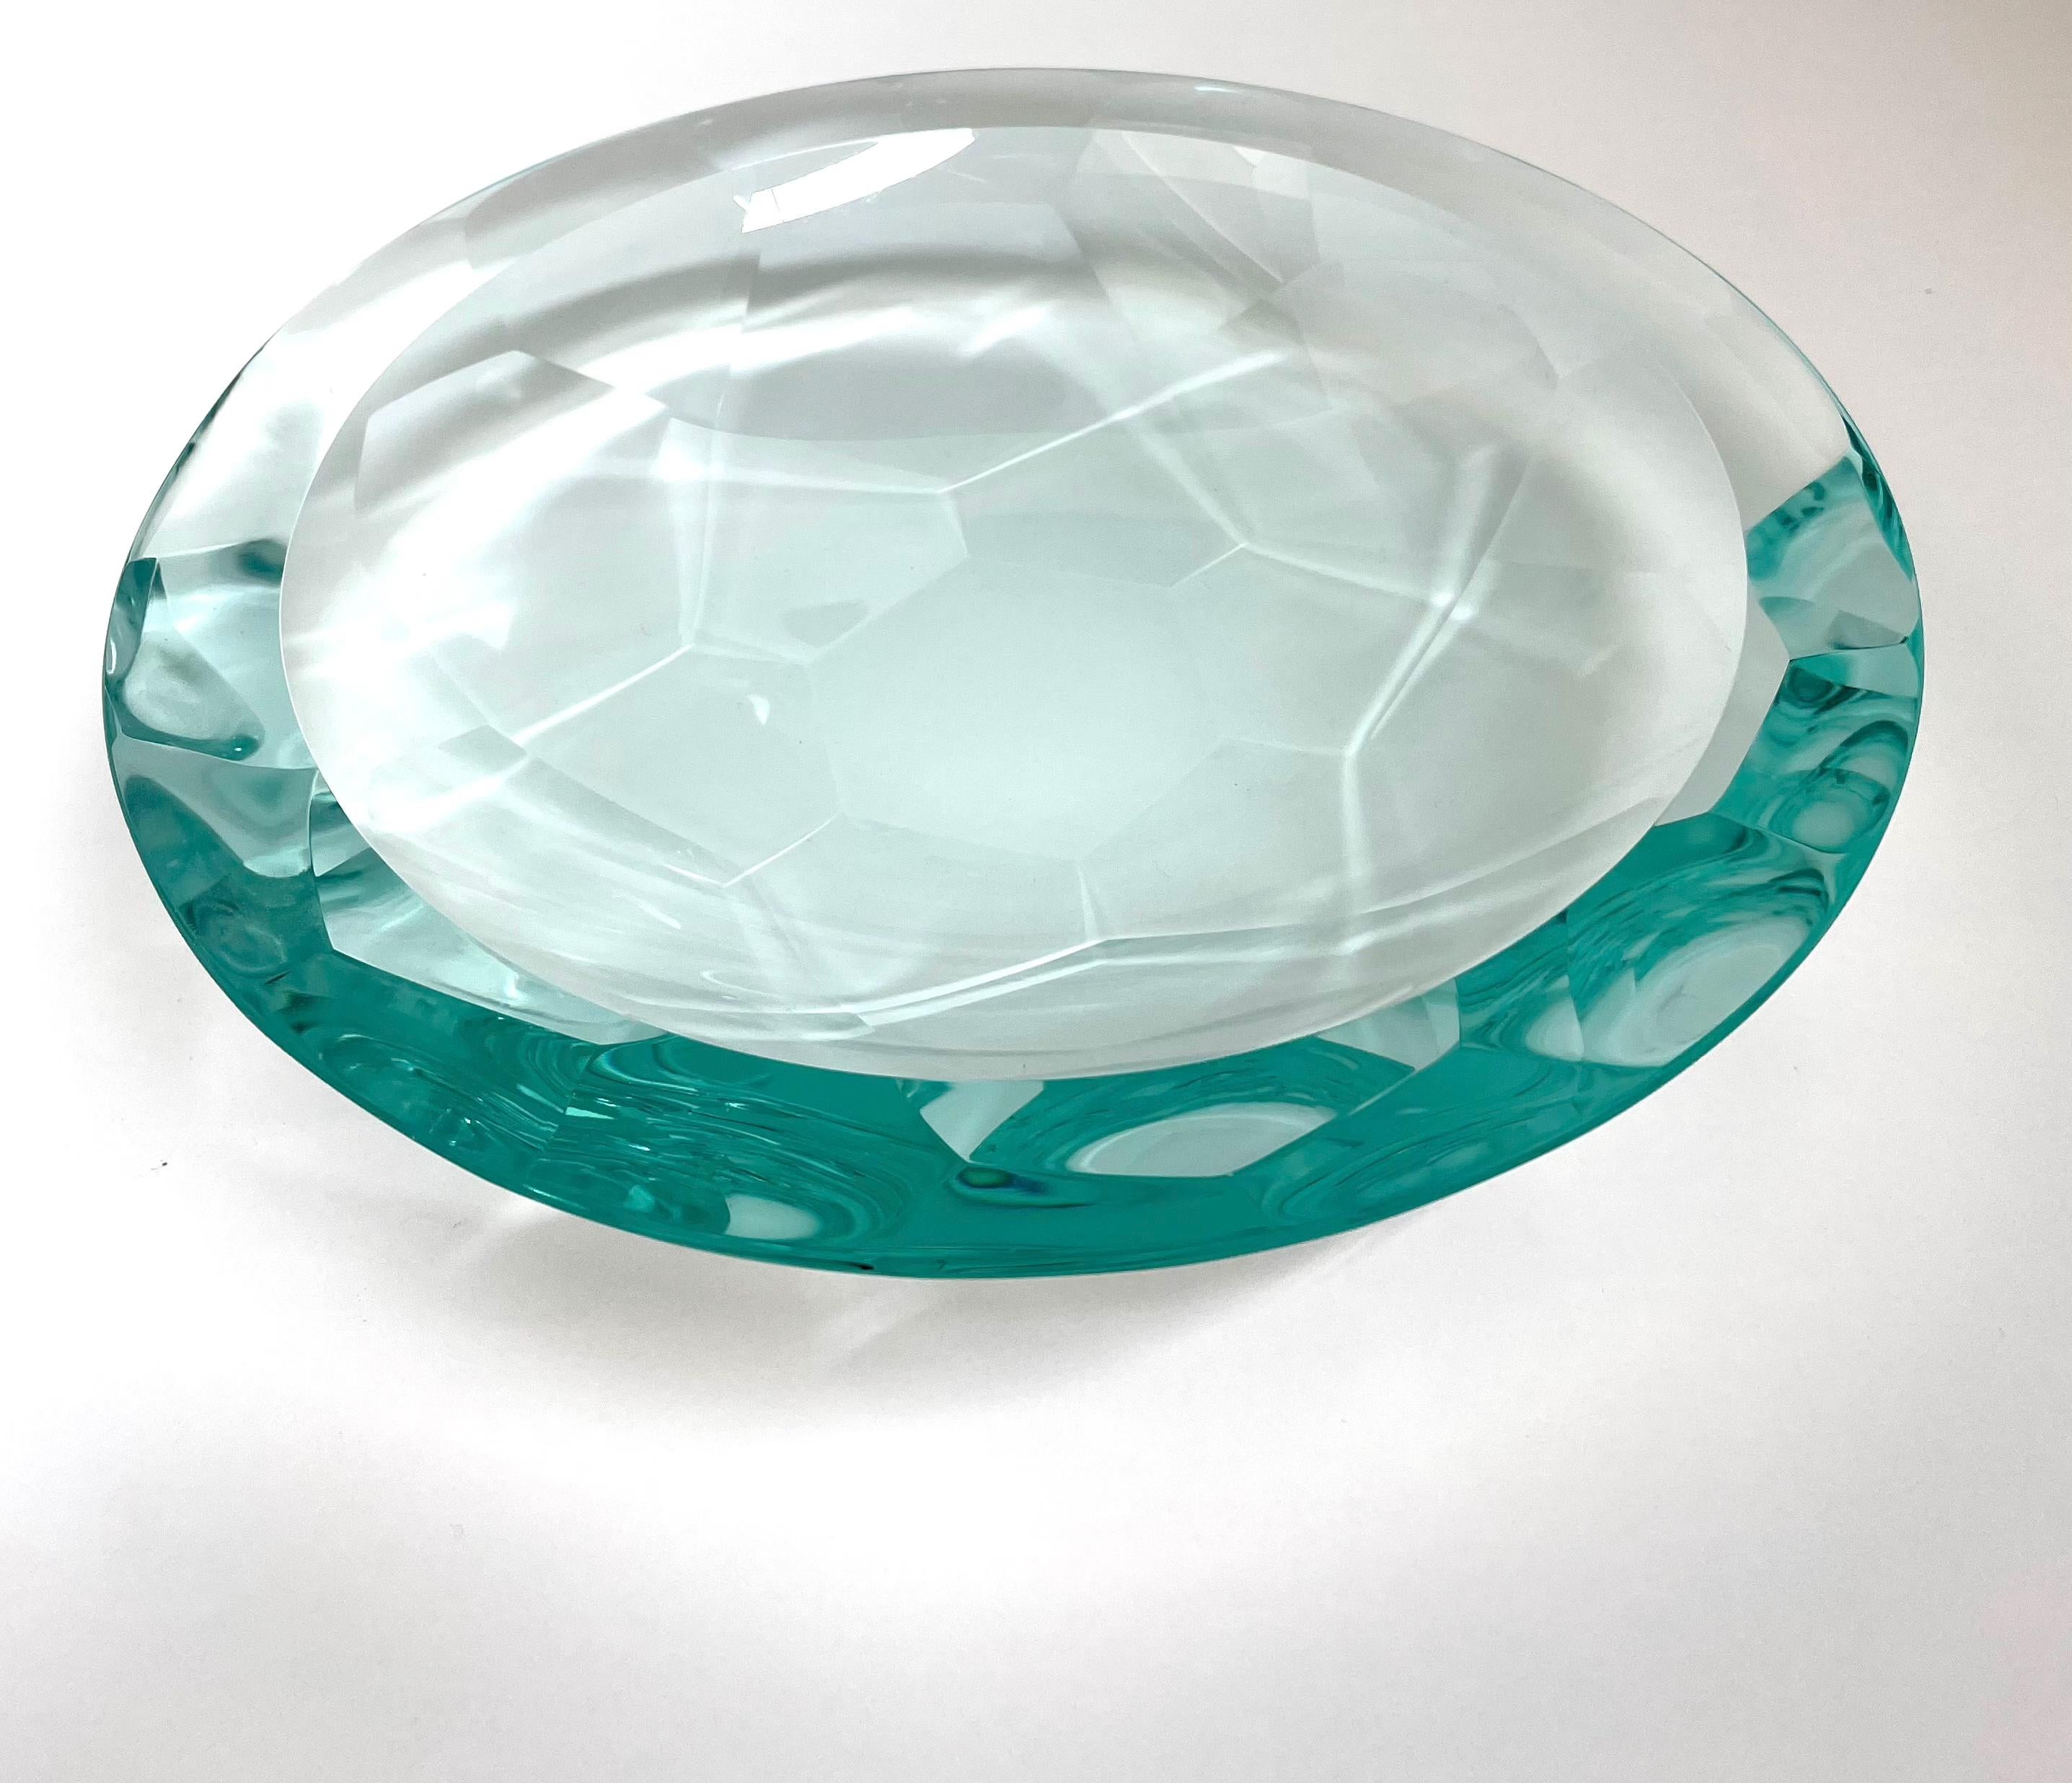 Pour fabriquer ce bol, le cristal a été courbé, broyé et poli à la main.
Grâce à une technique de meulage particulière, il a été possible de créer un motif géométrique composé d'hexagones et de pentagones qui recréent l'image d'une fleur